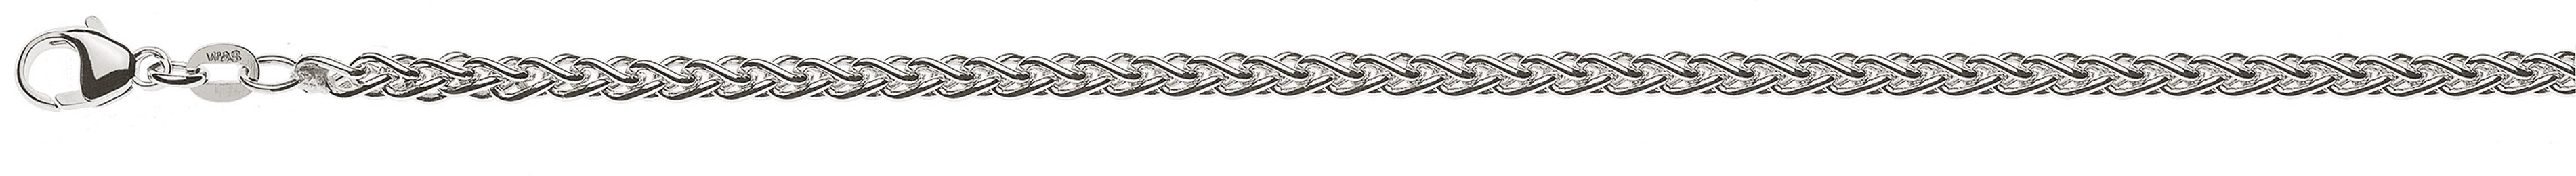 AURONOS Prestige Necklace white gold 18K cable chain 50cm 3.3mm